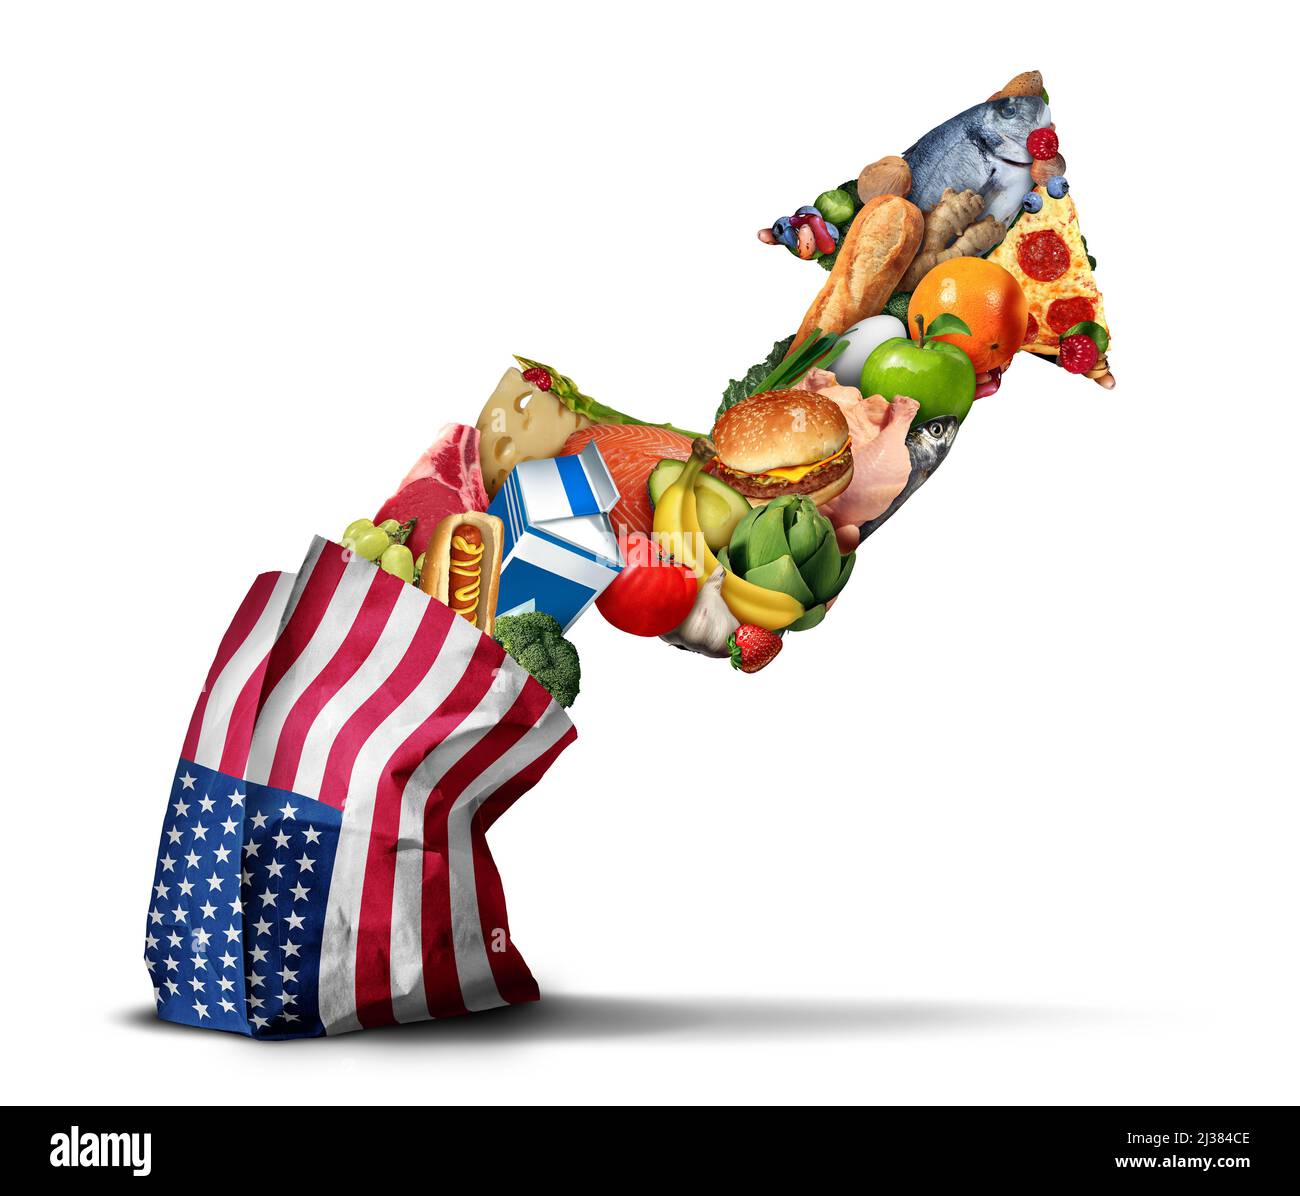 La hausse du prix des denrées alimentaires aux États-Unis et la hausse du coût des produits alimentaires américains, en tant que concept de crise financière lié à l'inflation et à la hausse du coût des repas. Banque D'Images